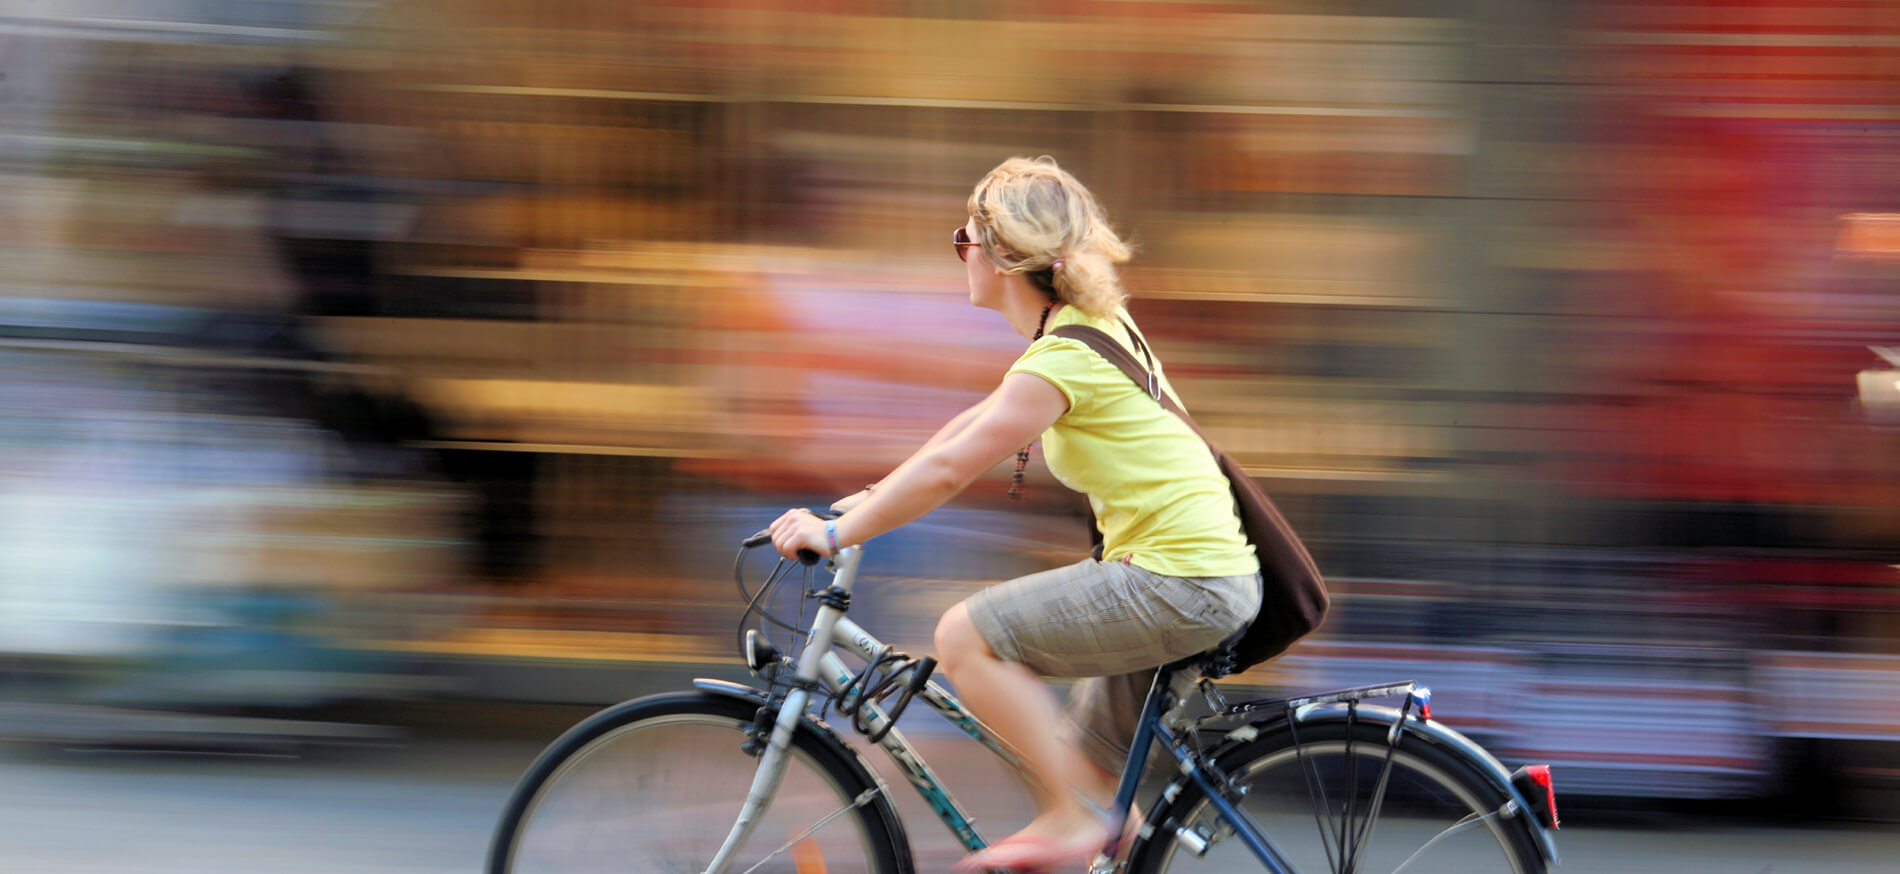 Lifestyle Biking Woman City 